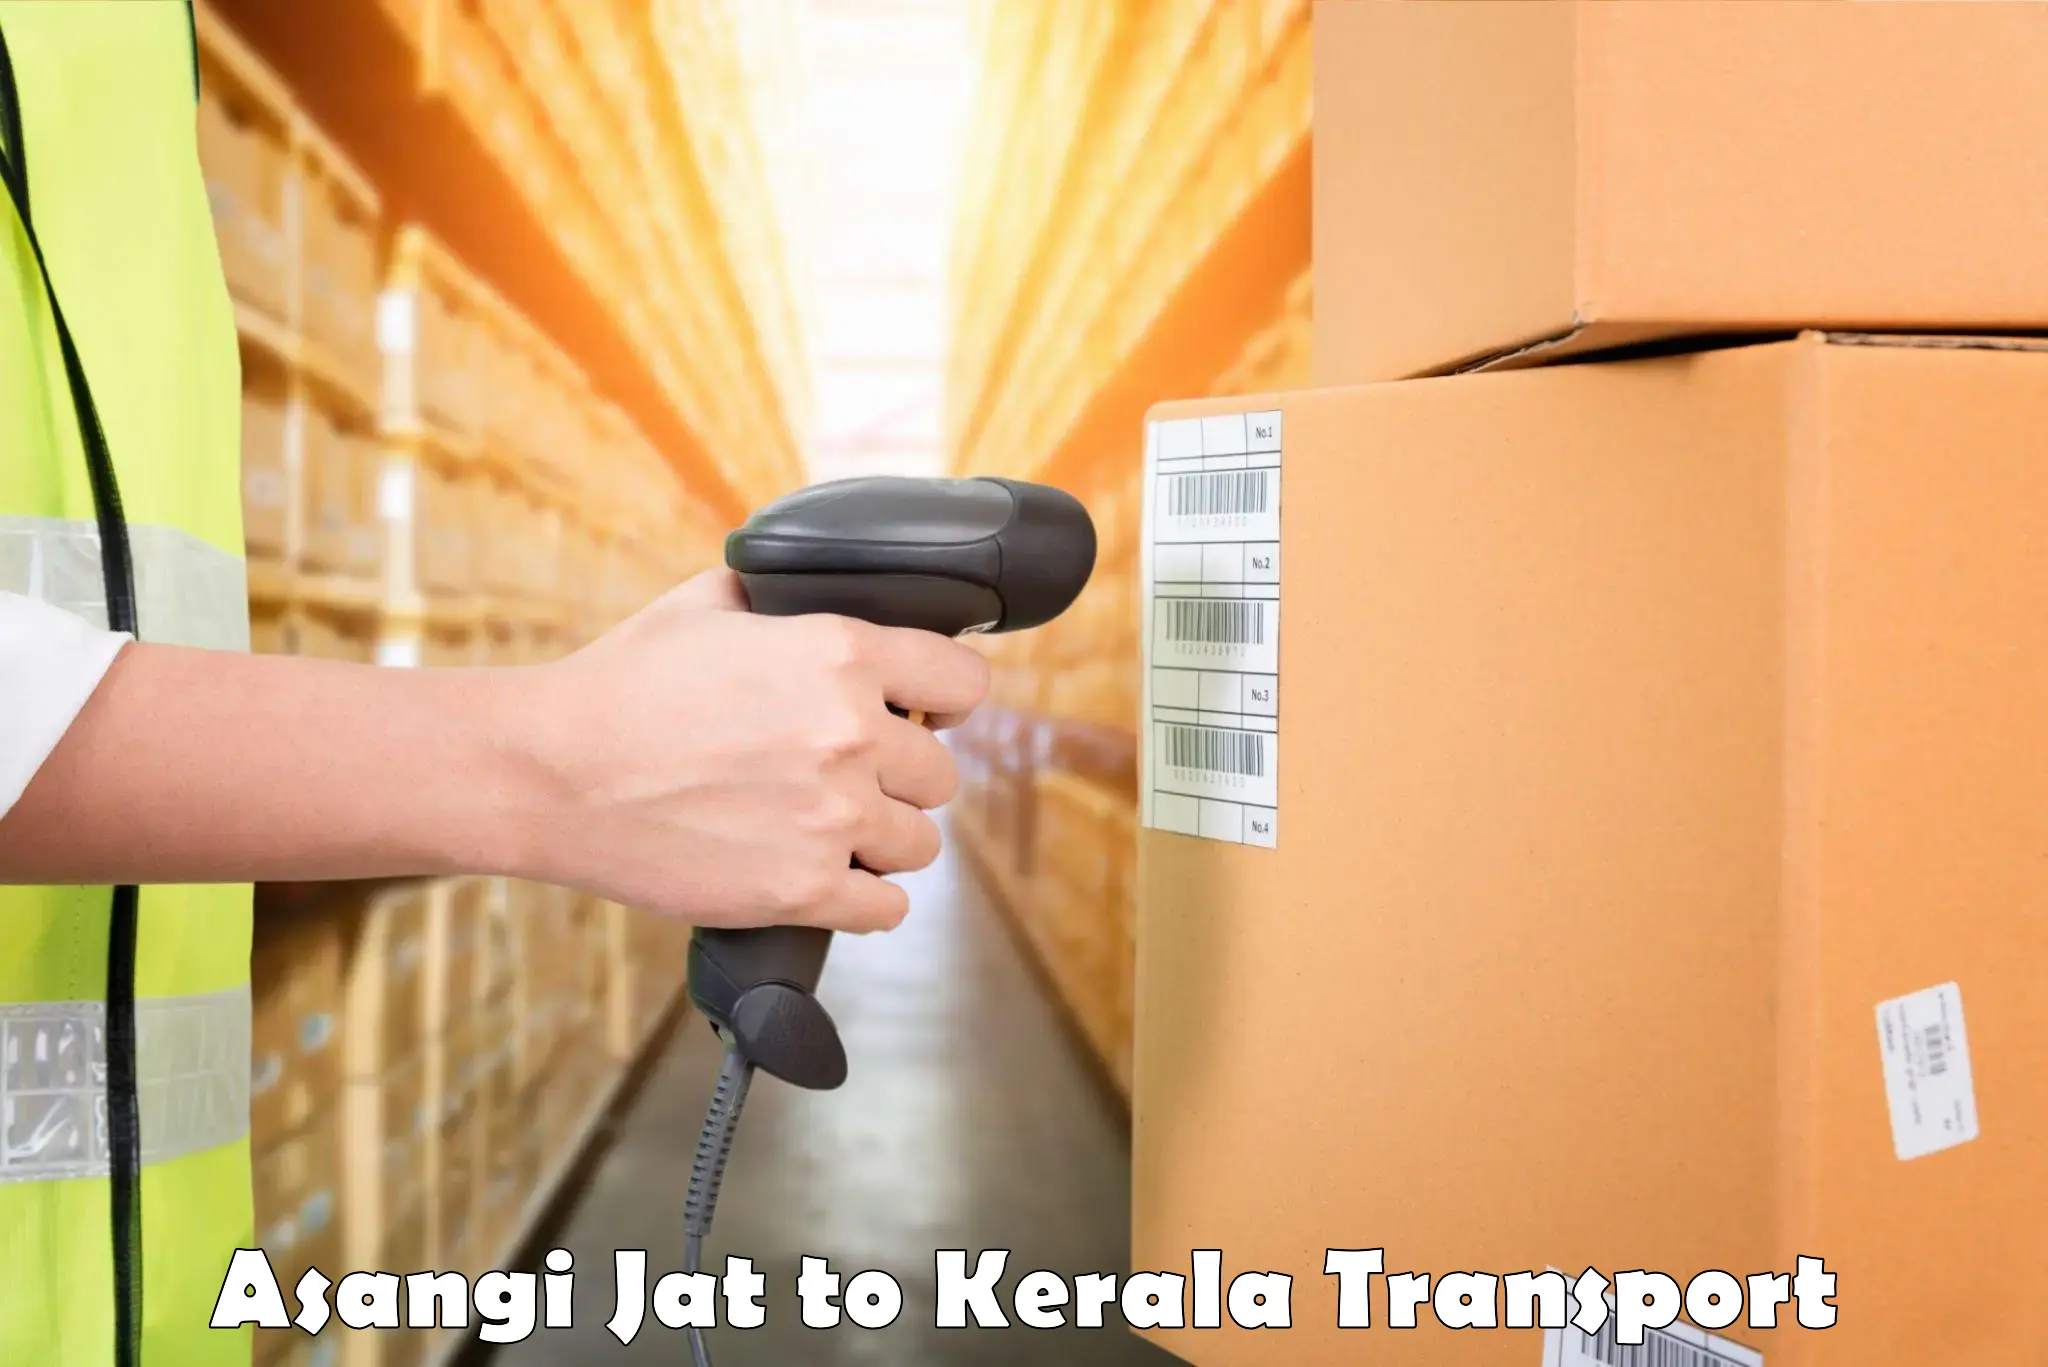 Material transport services Asangi Jat to Kerala